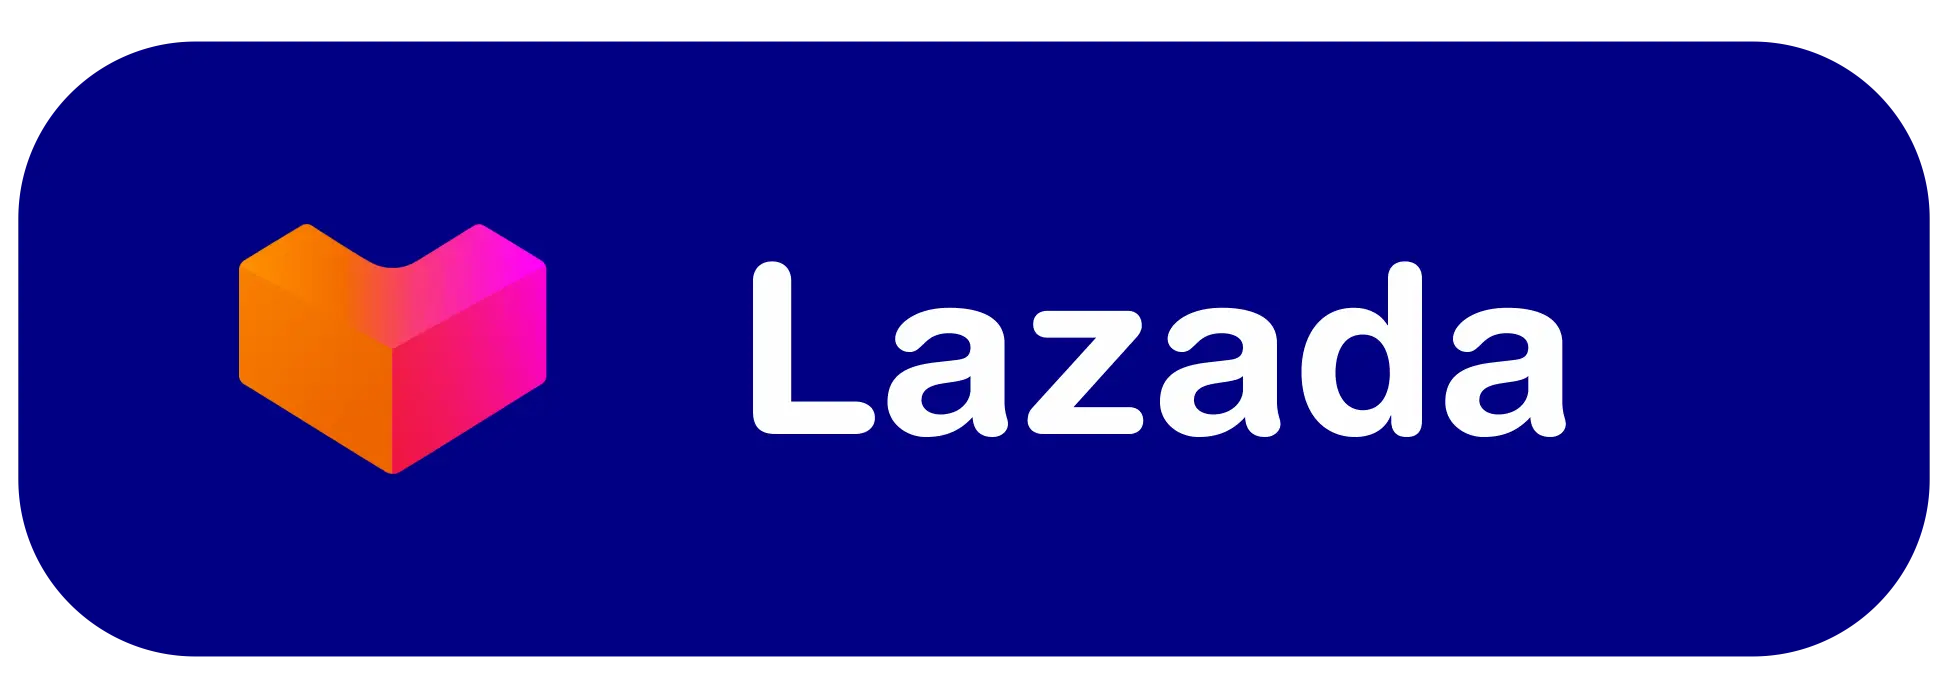 Beli di Lazada